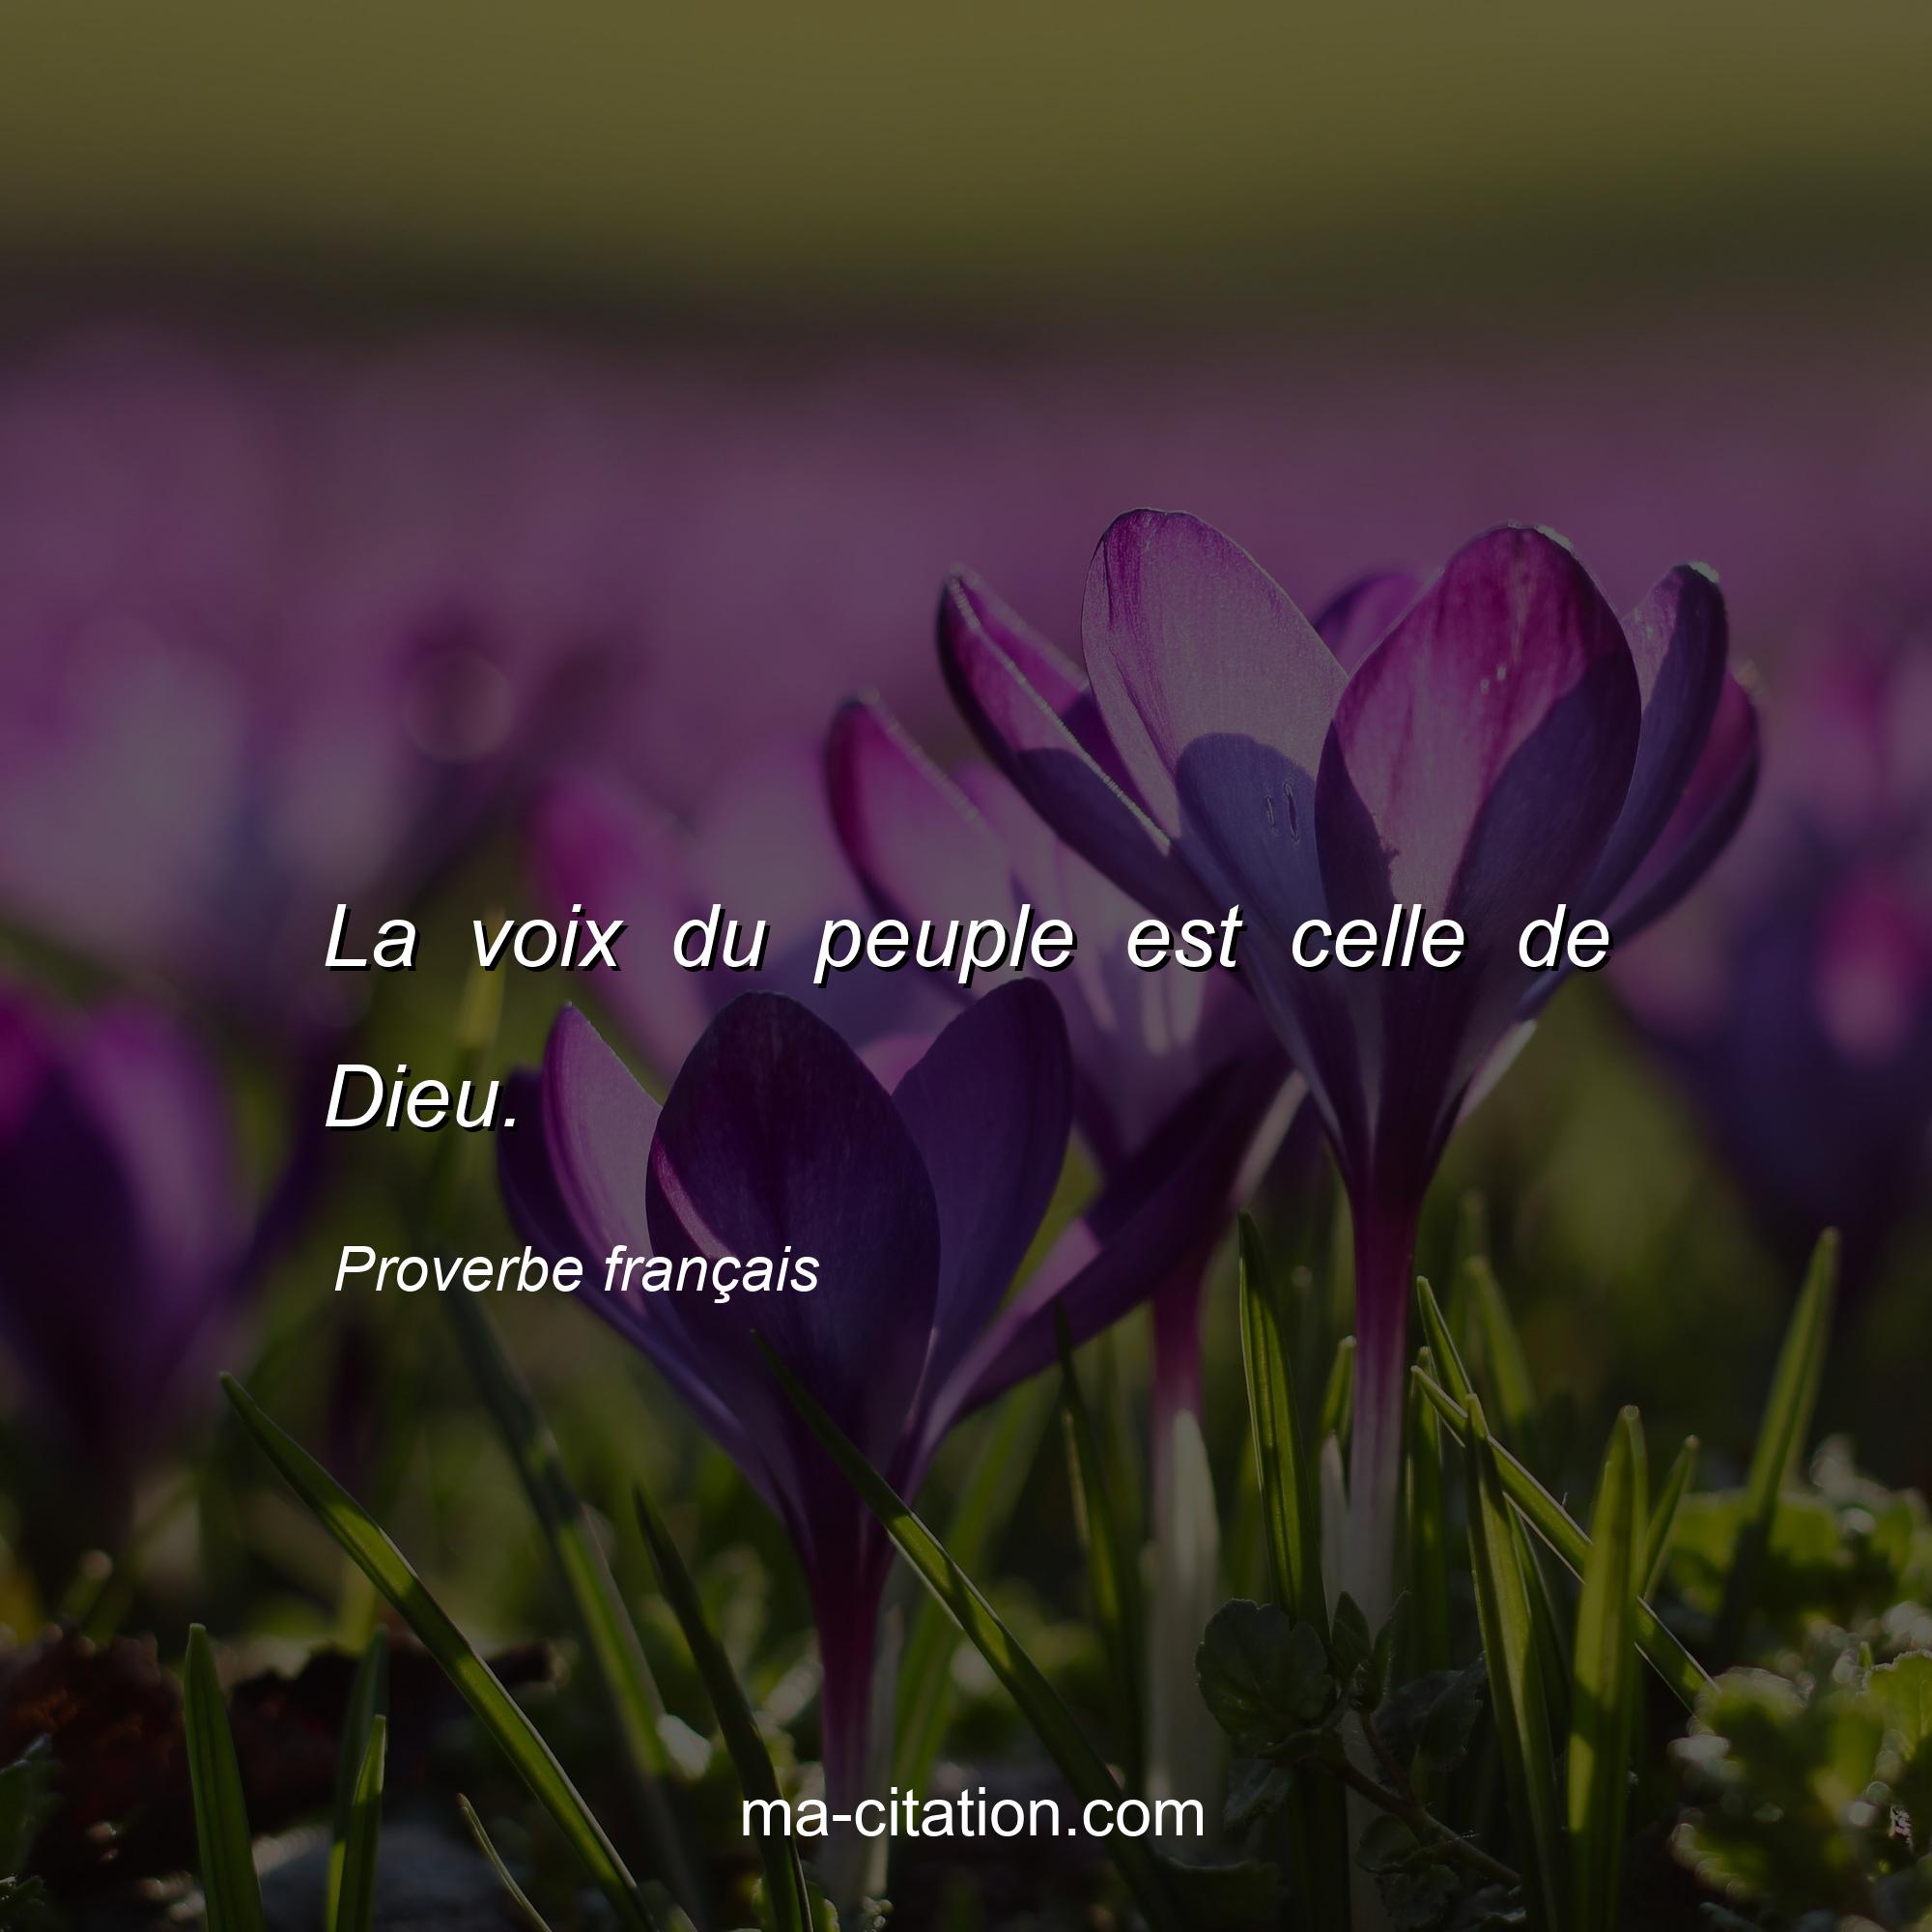 Proverbe français : La voix du peuple est celle de Dieu.